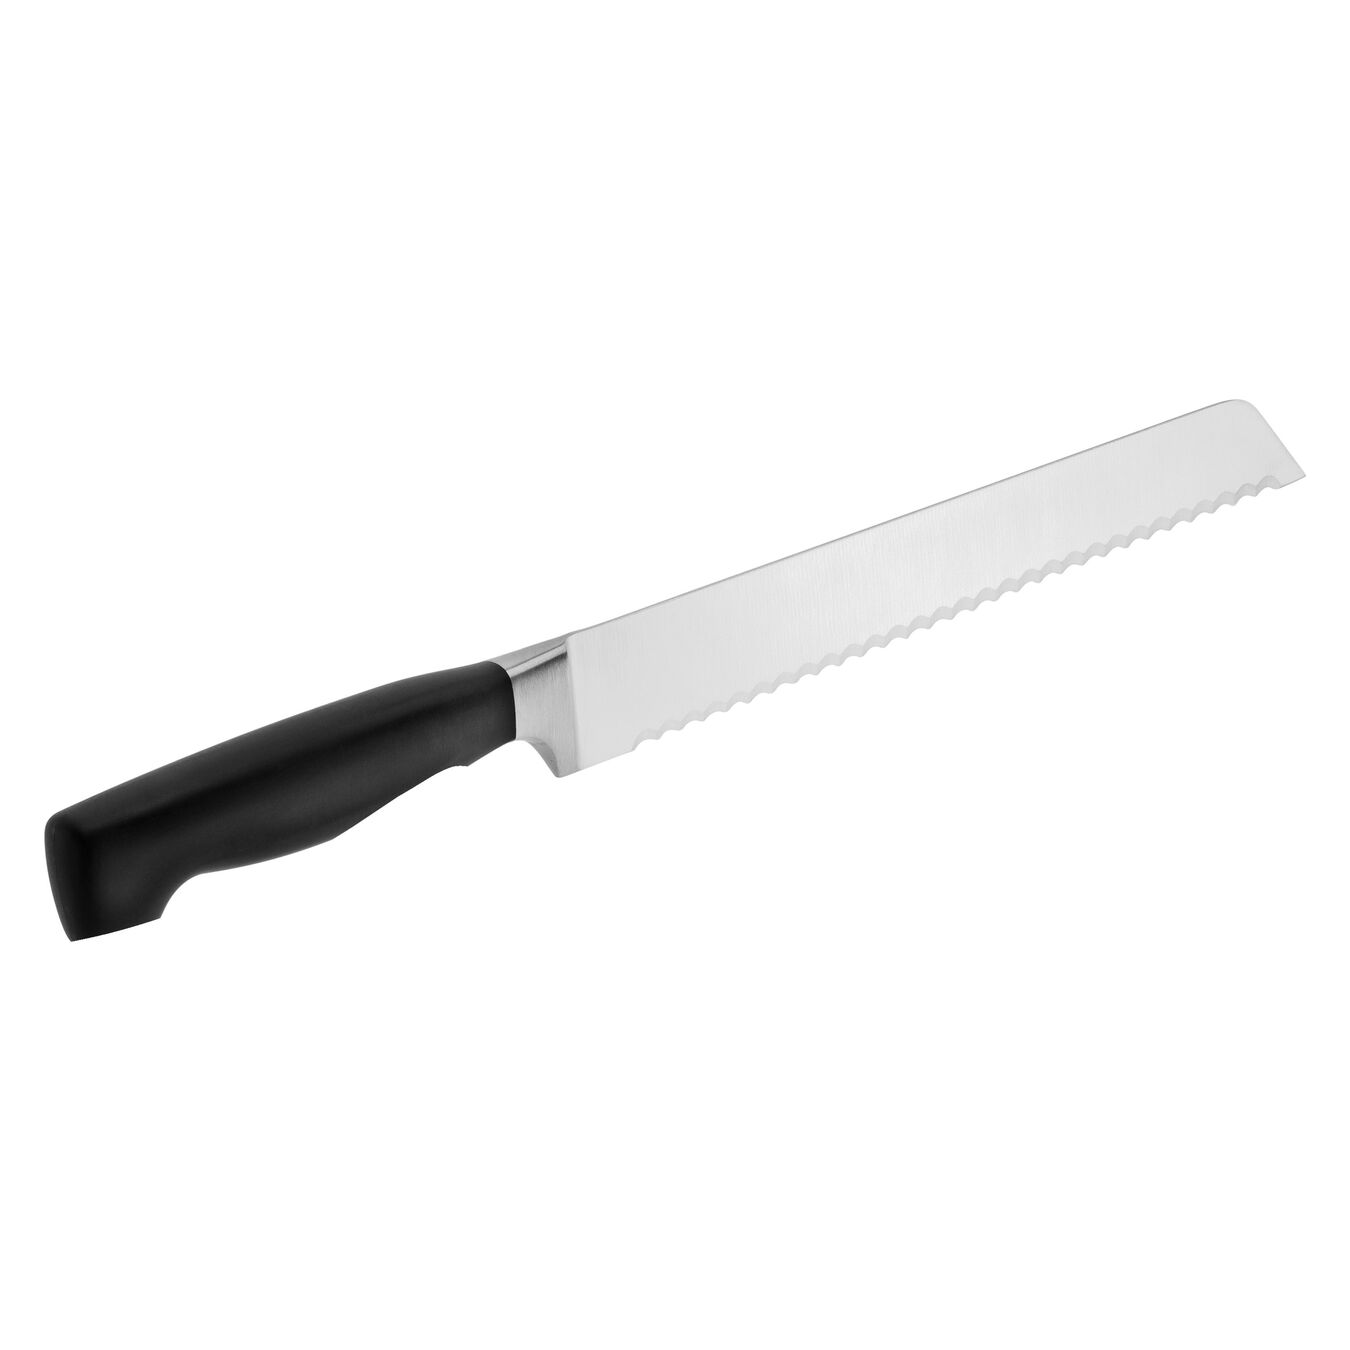 Cuchillo para pan 20 cm, con sierra,,large 2